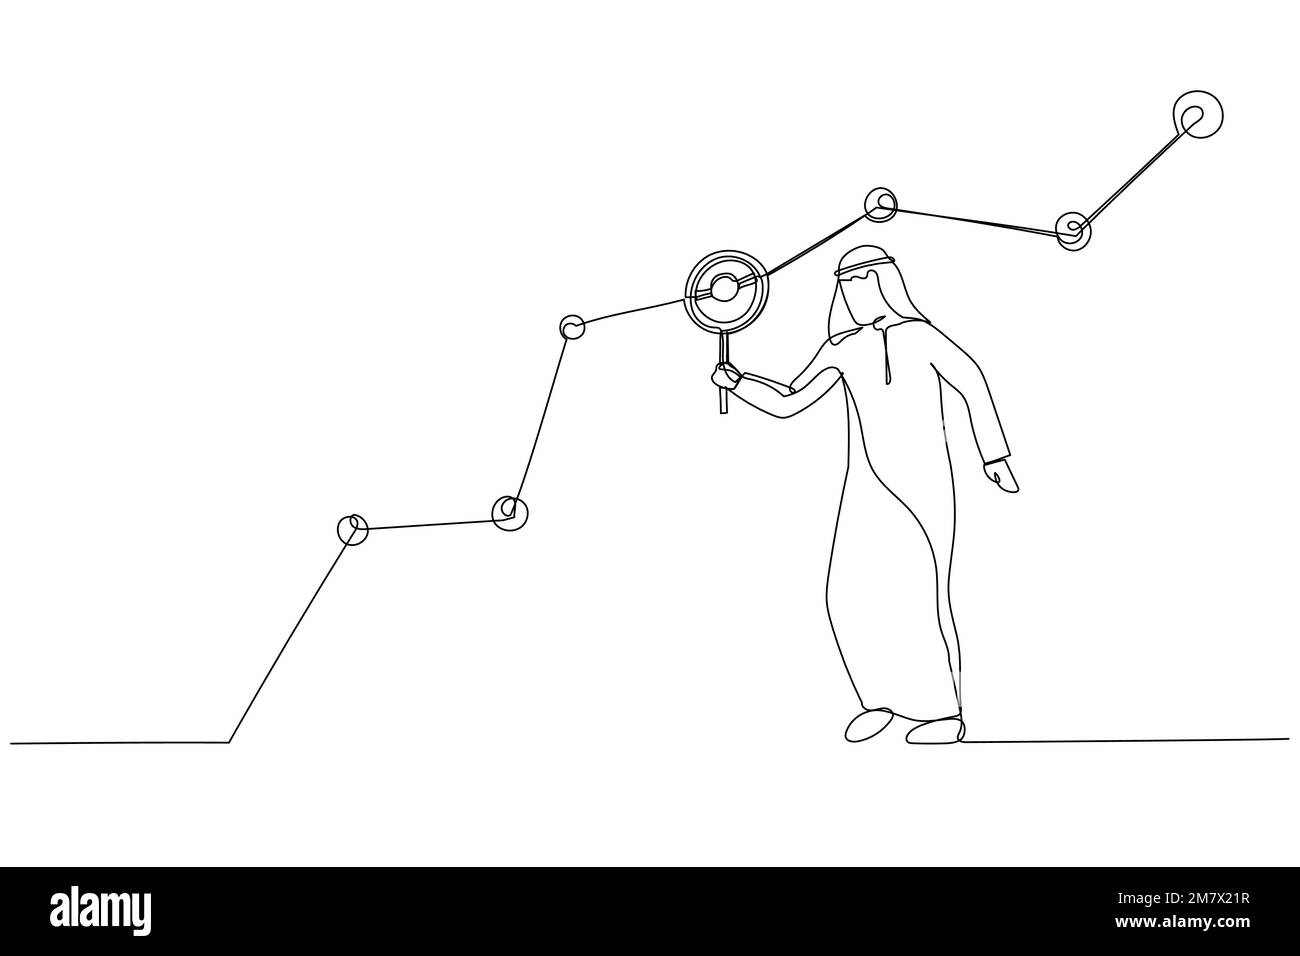 Zeichnung eines arabischen Marketingexperten, der eine Lupe hält, Analyse von Kundendaten in Diagrammen und Diagrammen. Strichgrafiken Stock Vektor